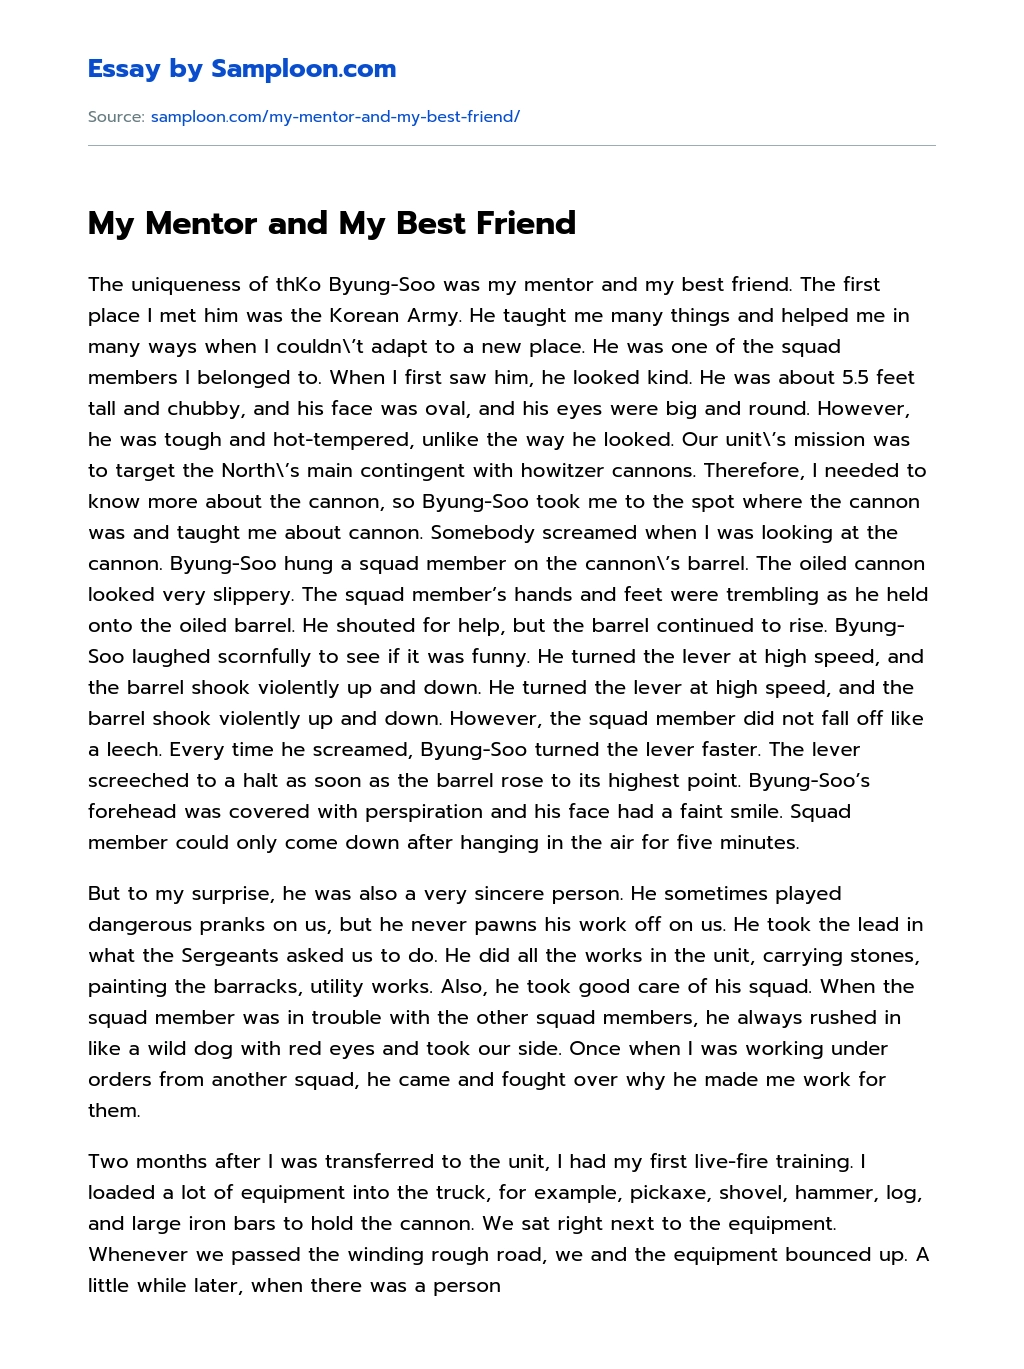 essay to my best friend